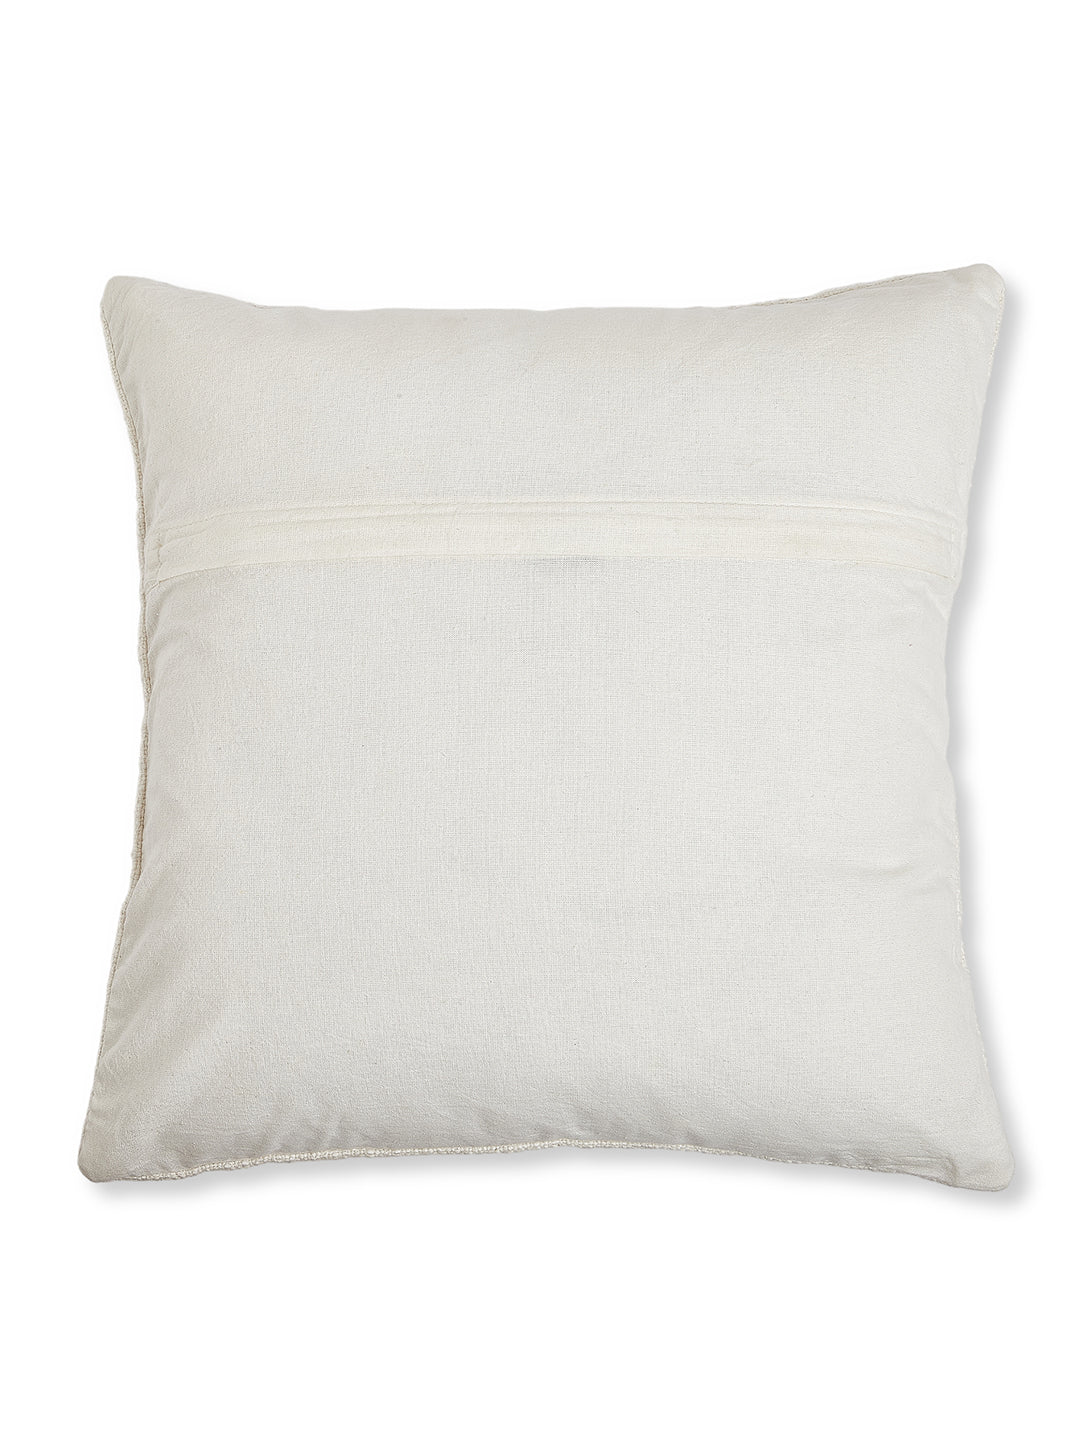 Seashell Quad Cushion Cover- Handmade